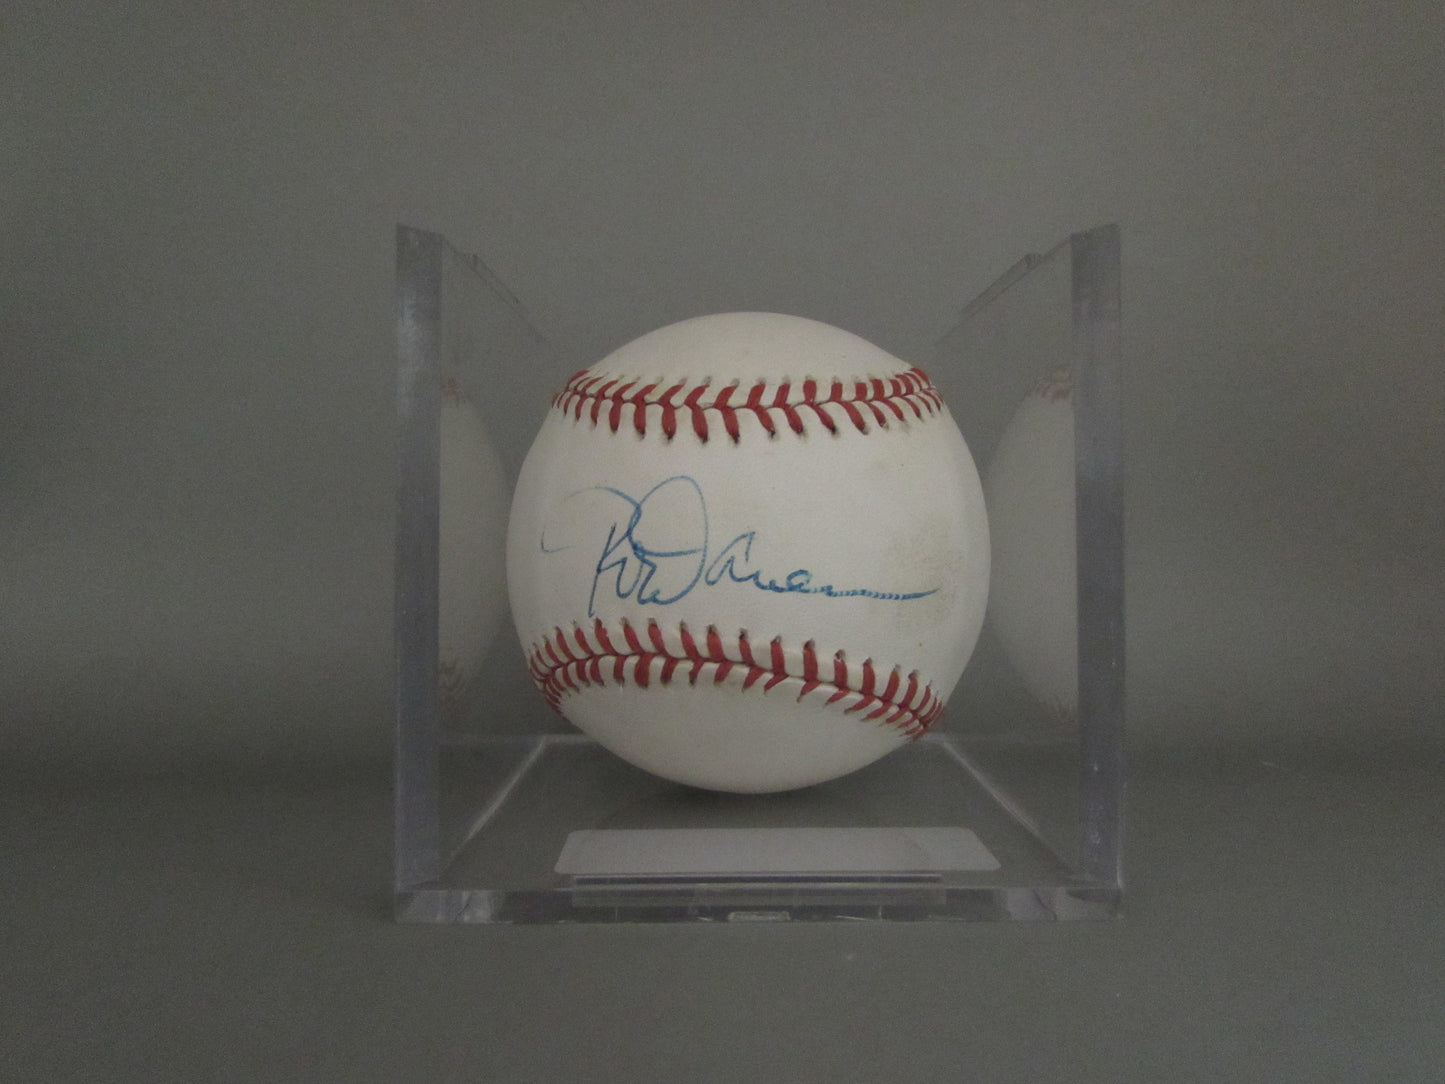 Rod Carew signed baseball